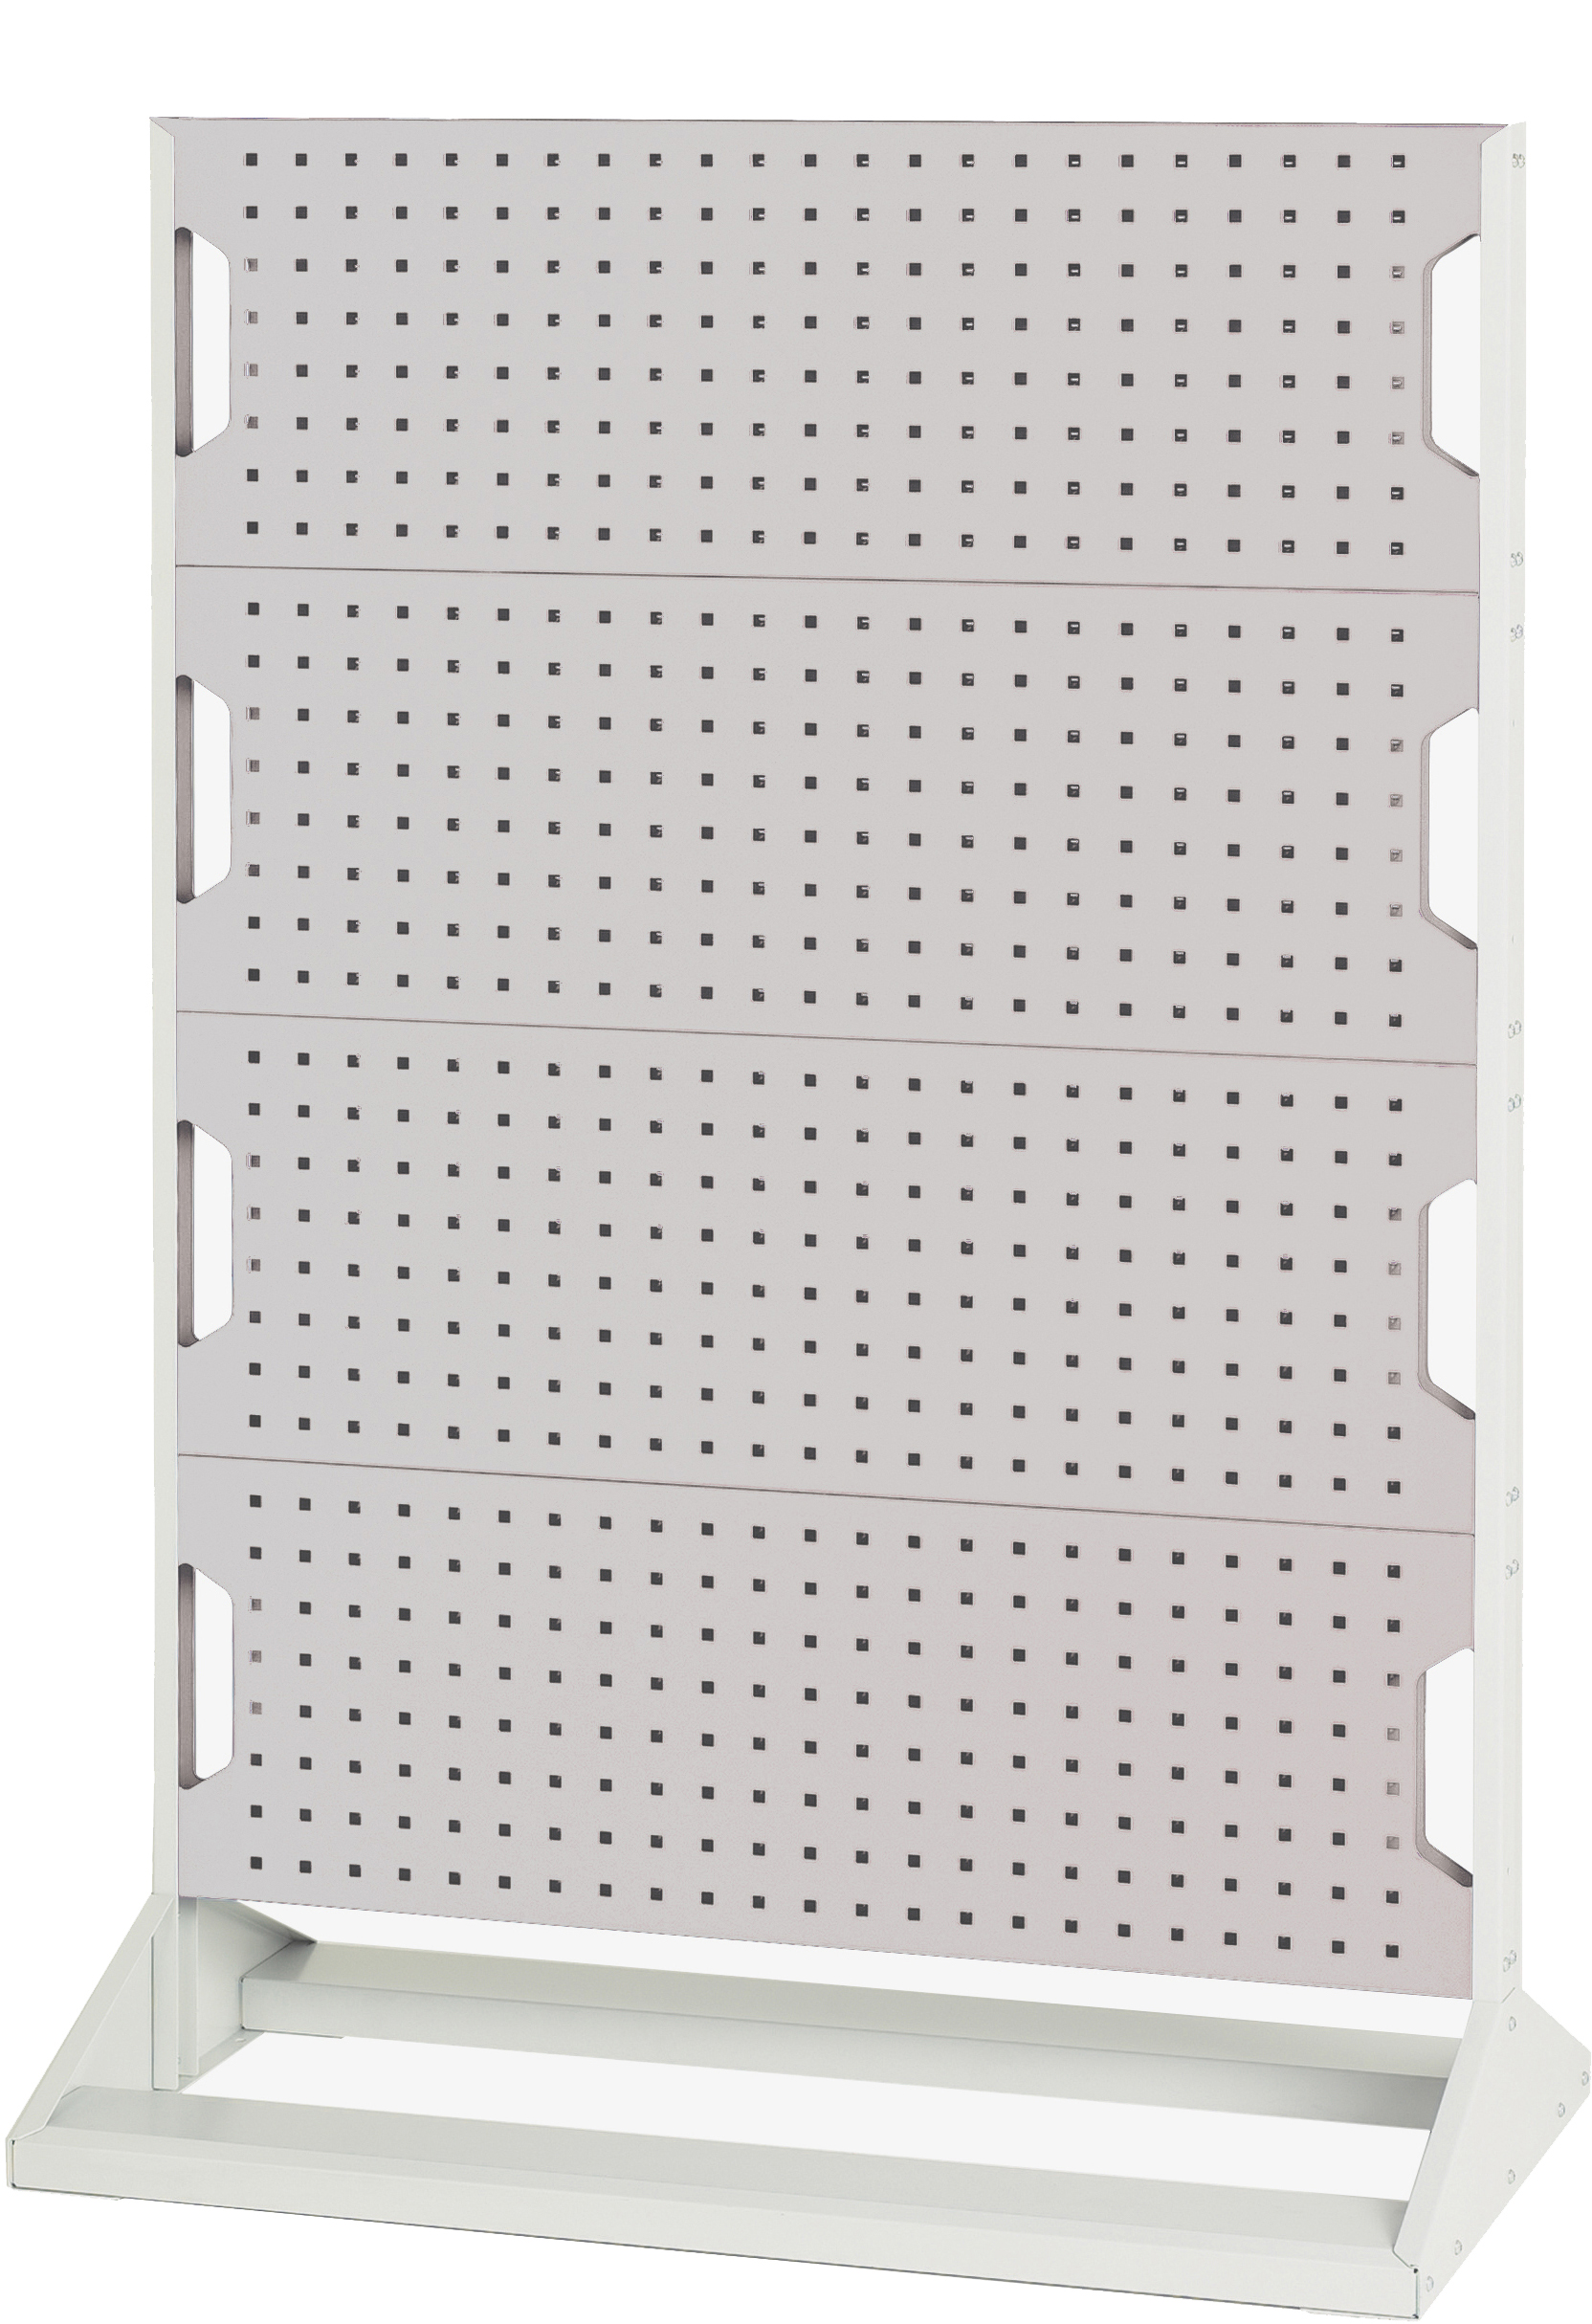 Bott Perfo Panel Rack (Single Sided) - 16917106.16V